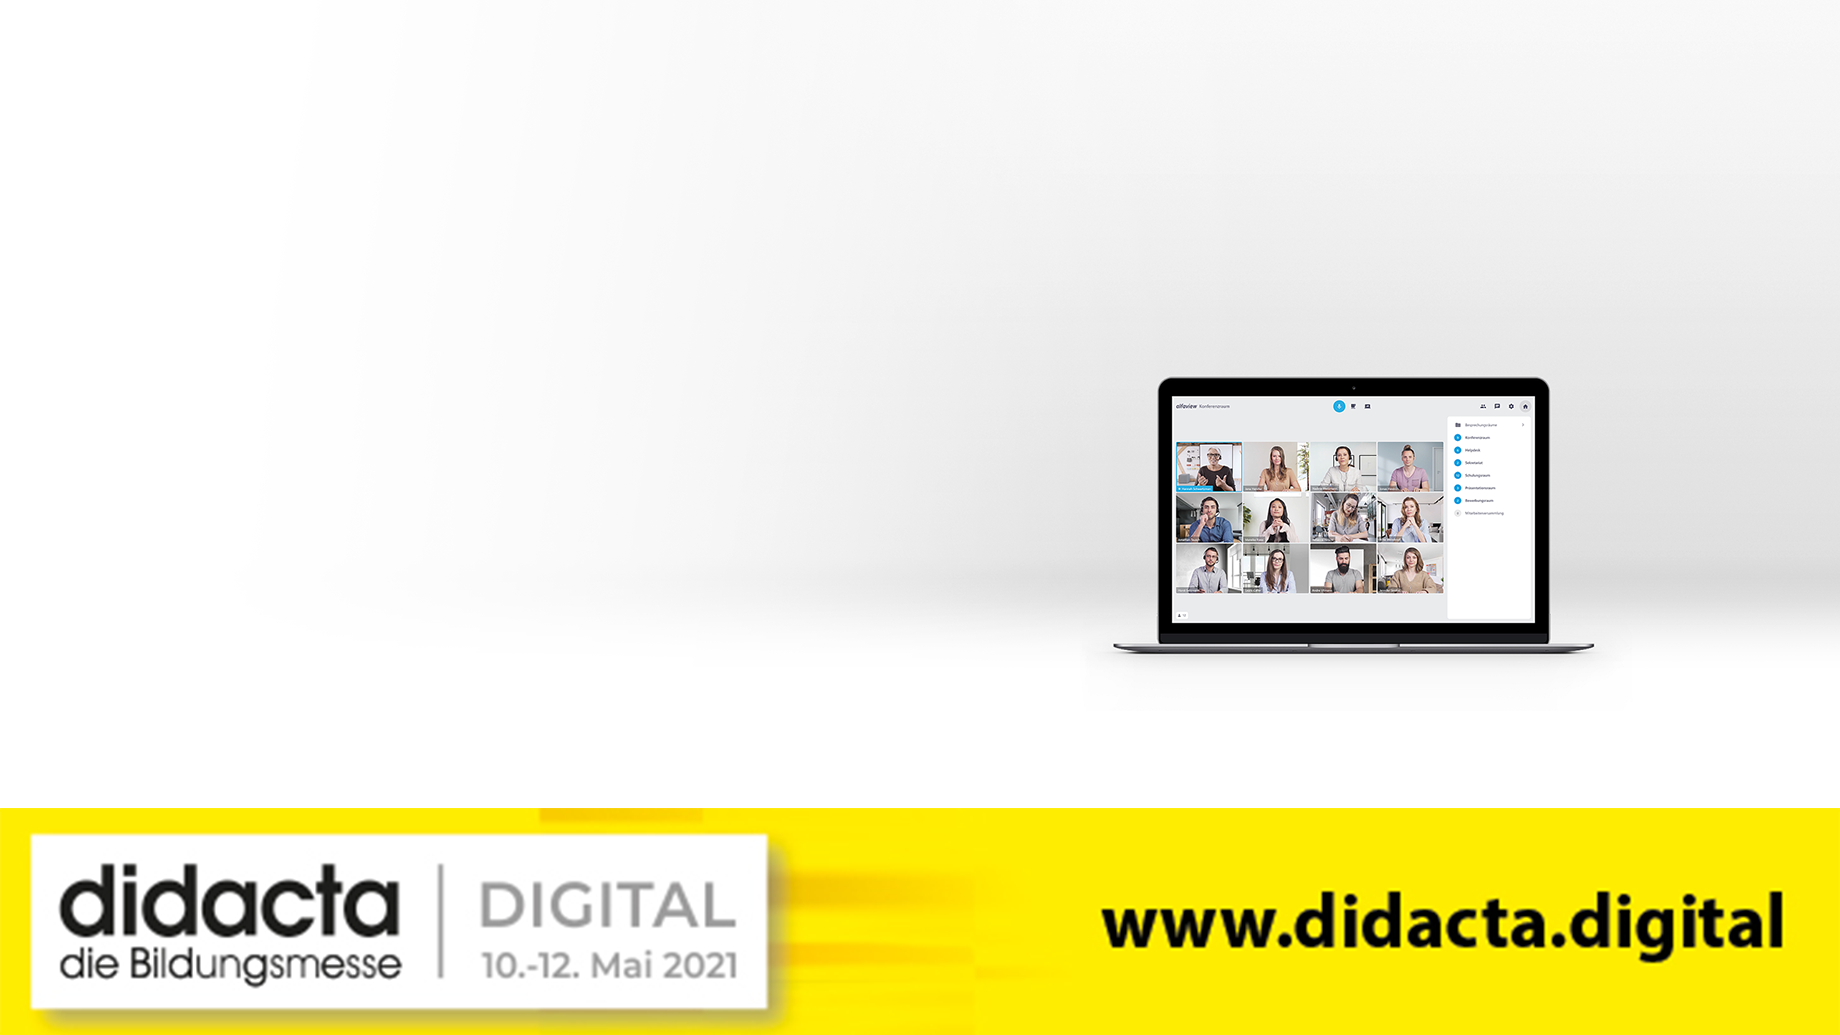 alfaview ist auf der didacta digital 2021. Zu sehen ist ein Banner der Veranstaltung